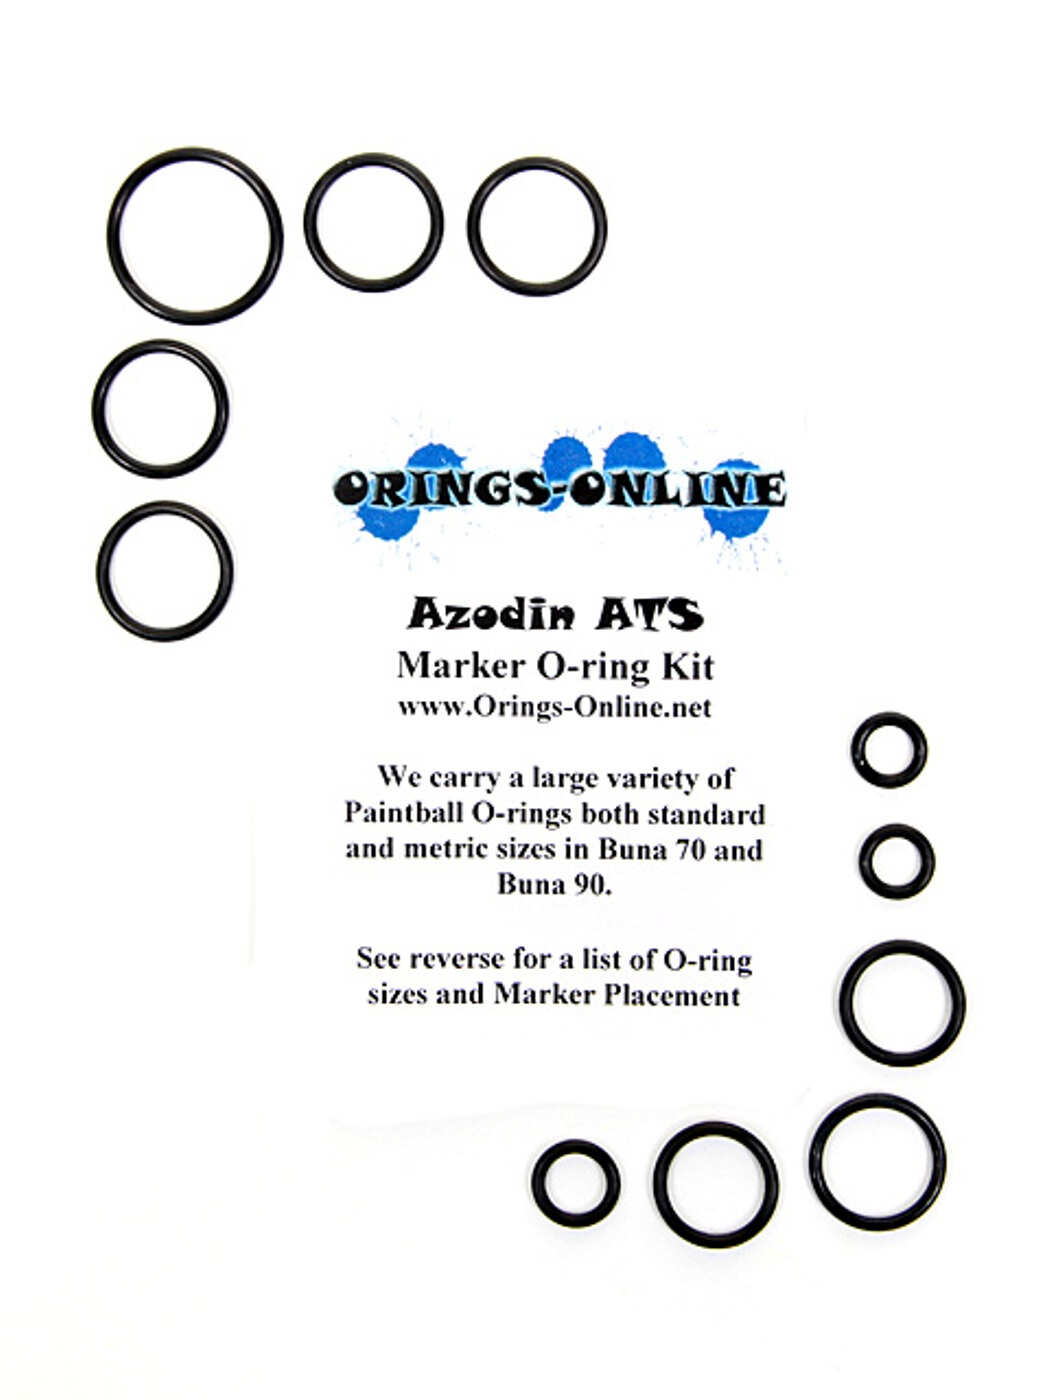 Azodin ATS Marker O-ring Kit